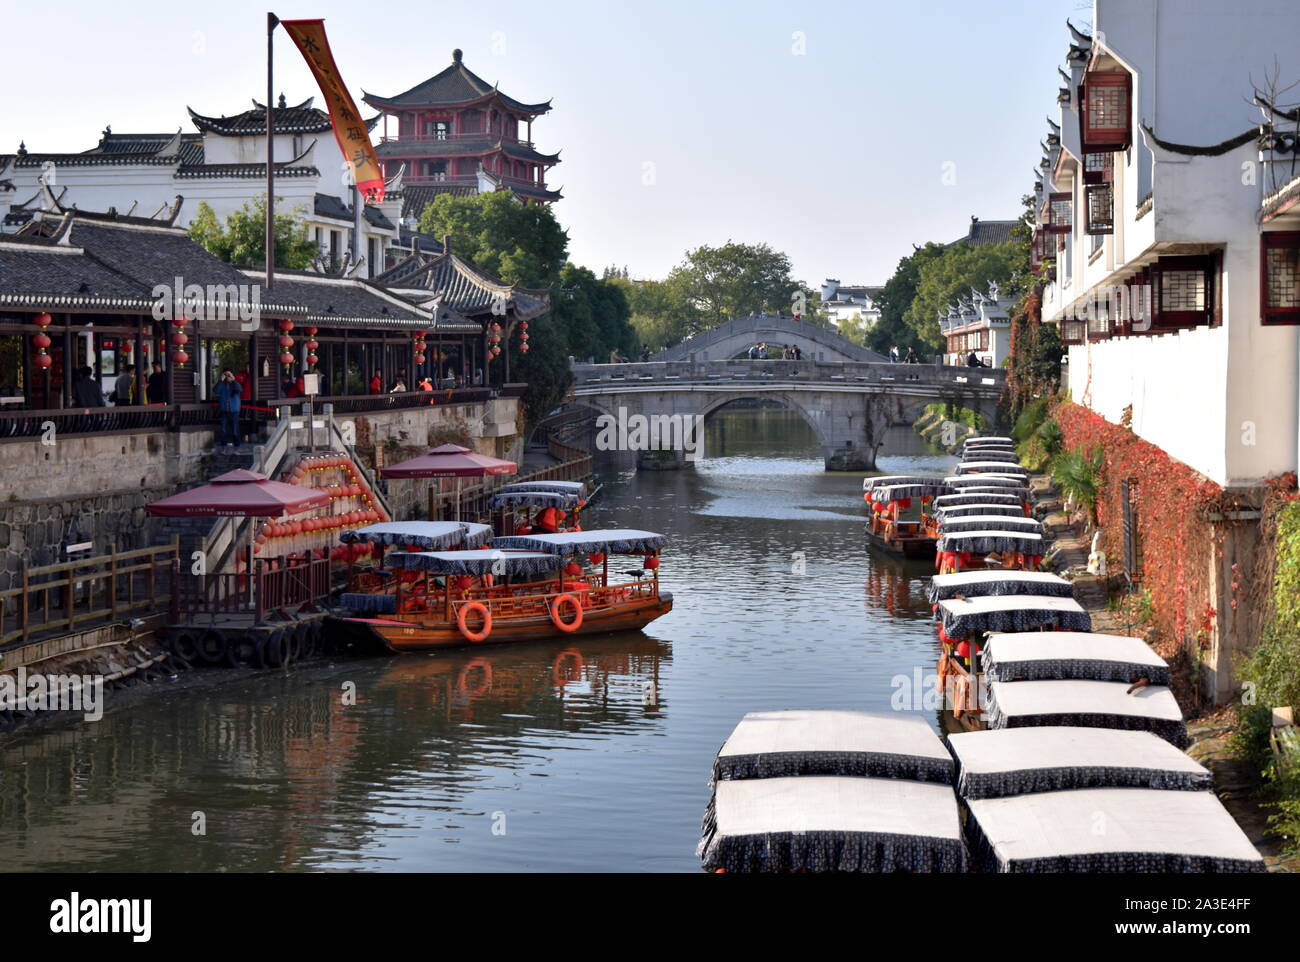 Chinois traditionnel vieux canal ville, bateaux et les ponts, Sanhe, Anhui, Chine Banque D'Images